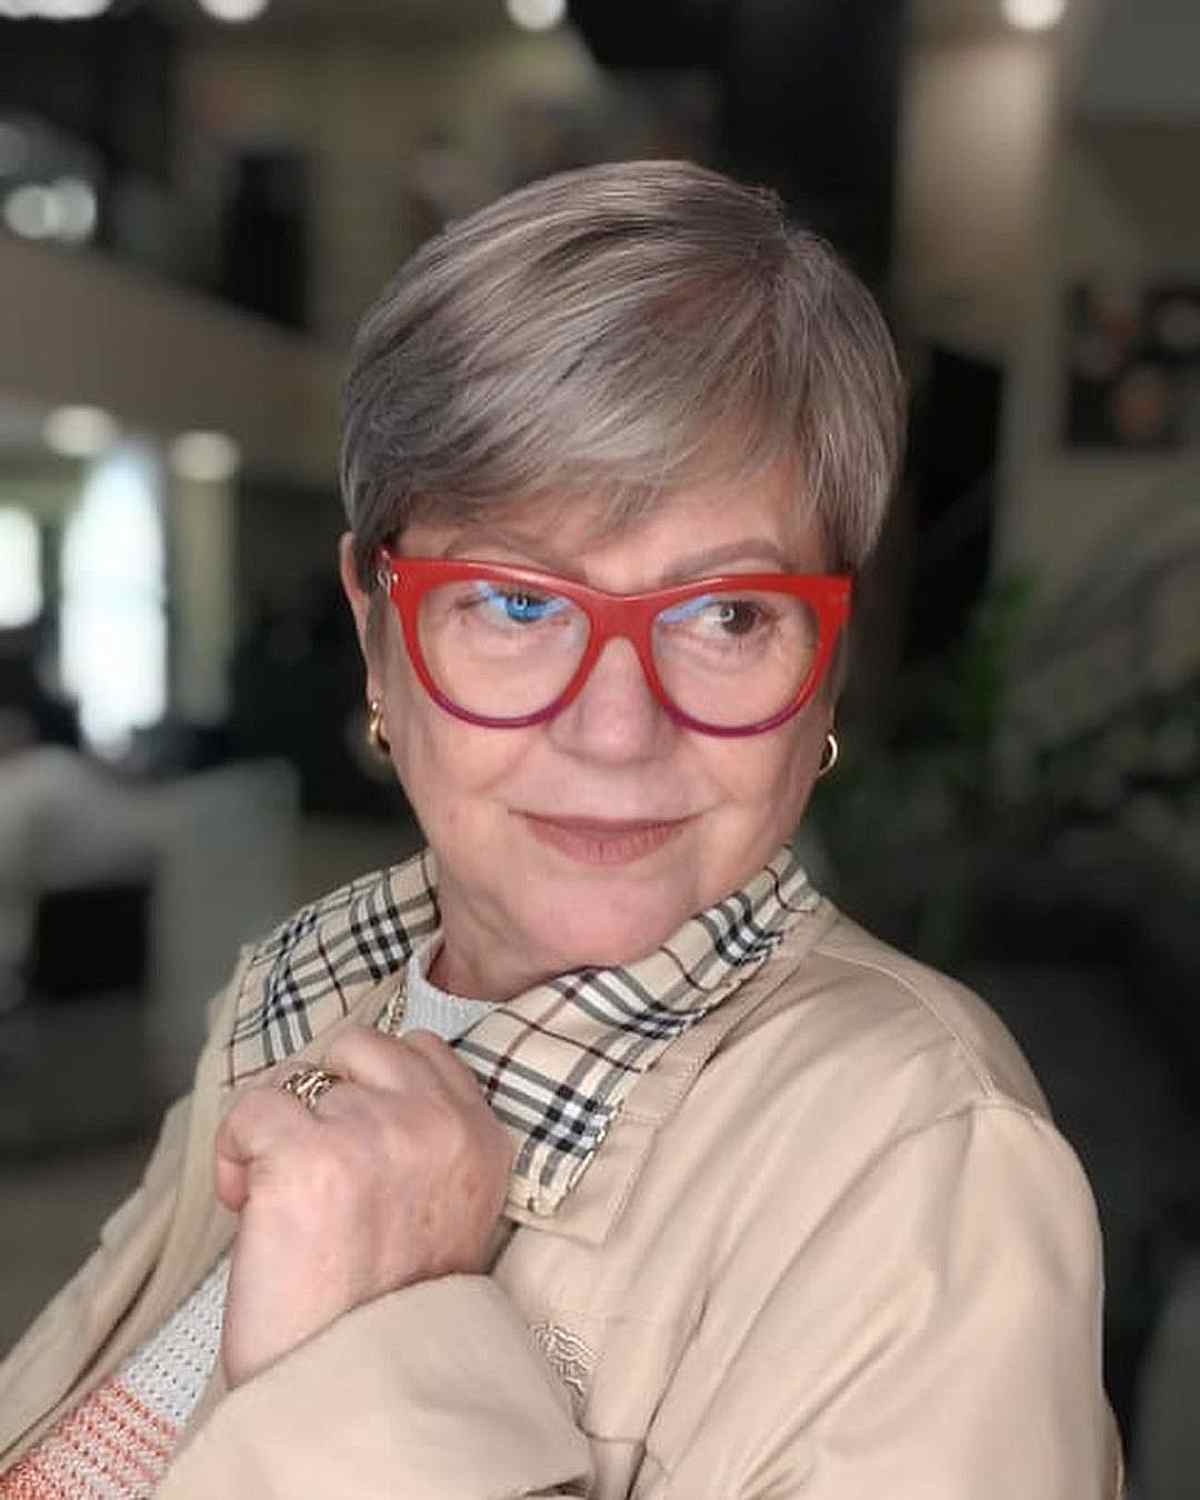 Corte pixie suave para senhora idosa com óculos